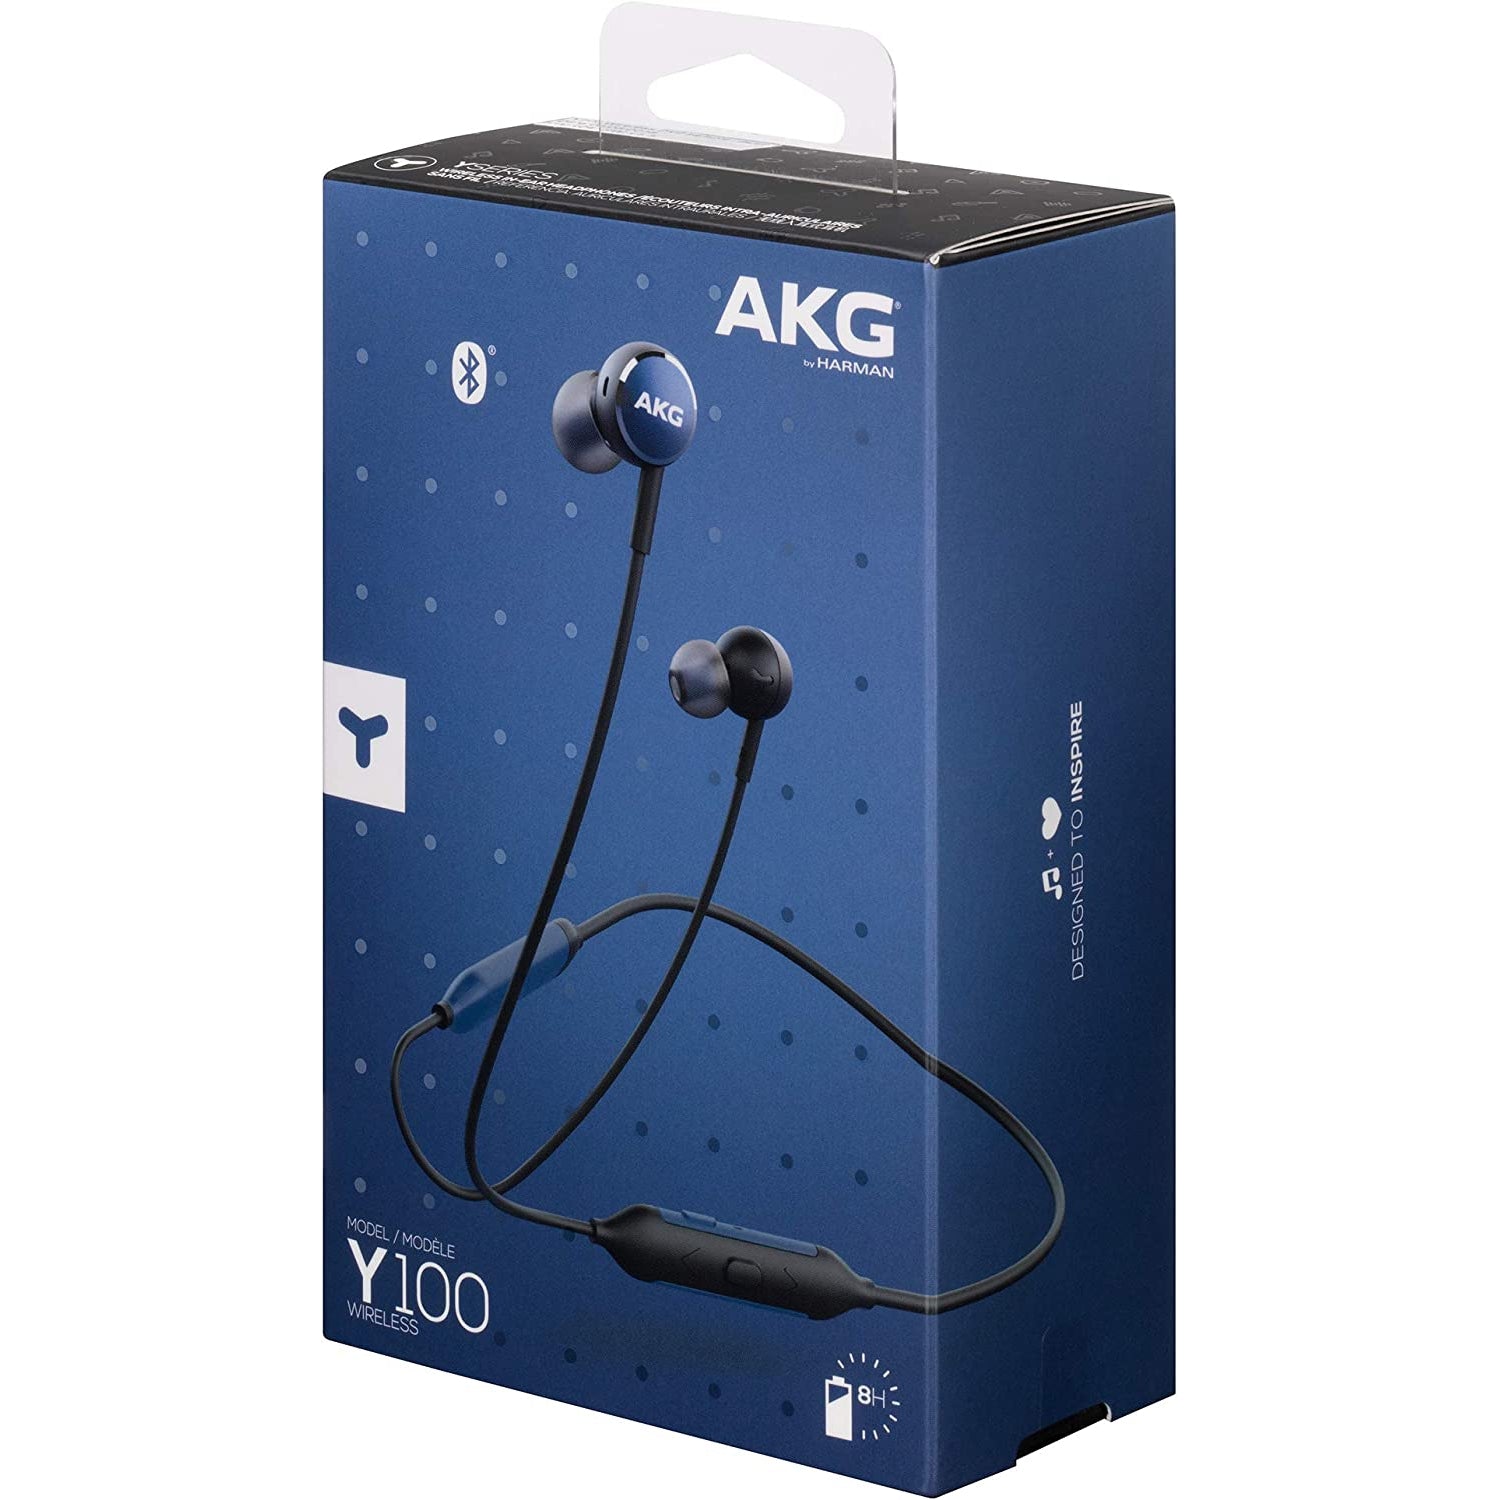 AKG Y100 Wireless In-Ear Headphones - Blue - Refurbished Excellent